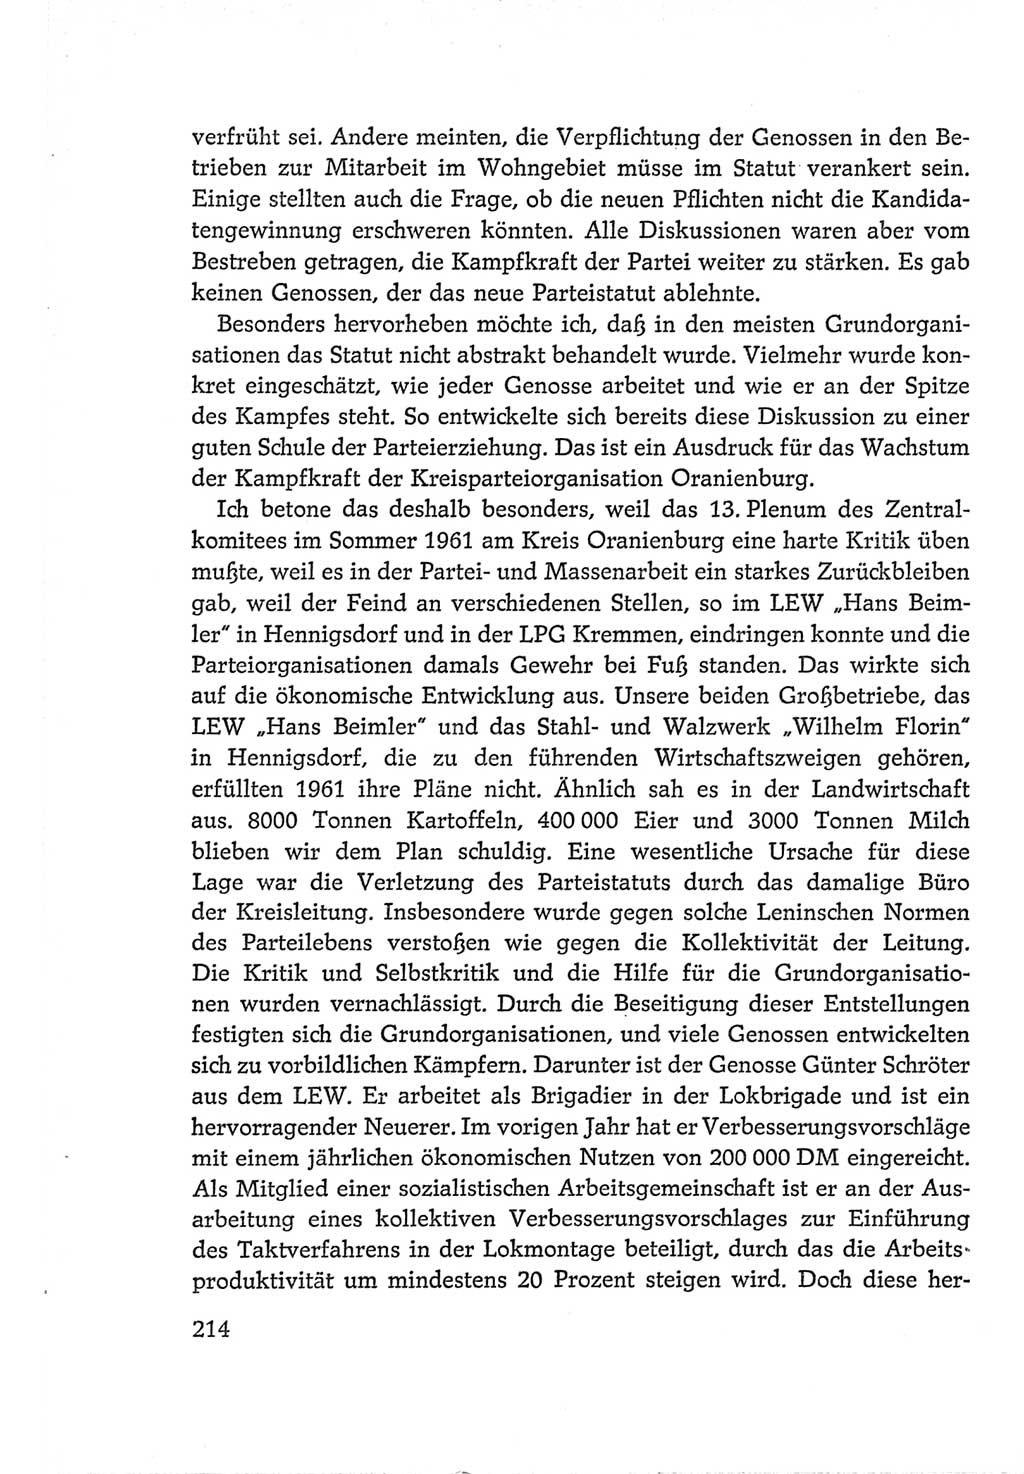 Protokoll der Verhandlungen des Ⅵ. Parteitages der Sozialistischen Einheitspartei Deutschlands (SED) [Deutsche Demokratische Republik (DDR)] 1963, Band Ⅱ, Seite 214 (Prot. Verh. Ⅵ. PT SED DDR 1963, Bd. Ⅱ, S. 214)